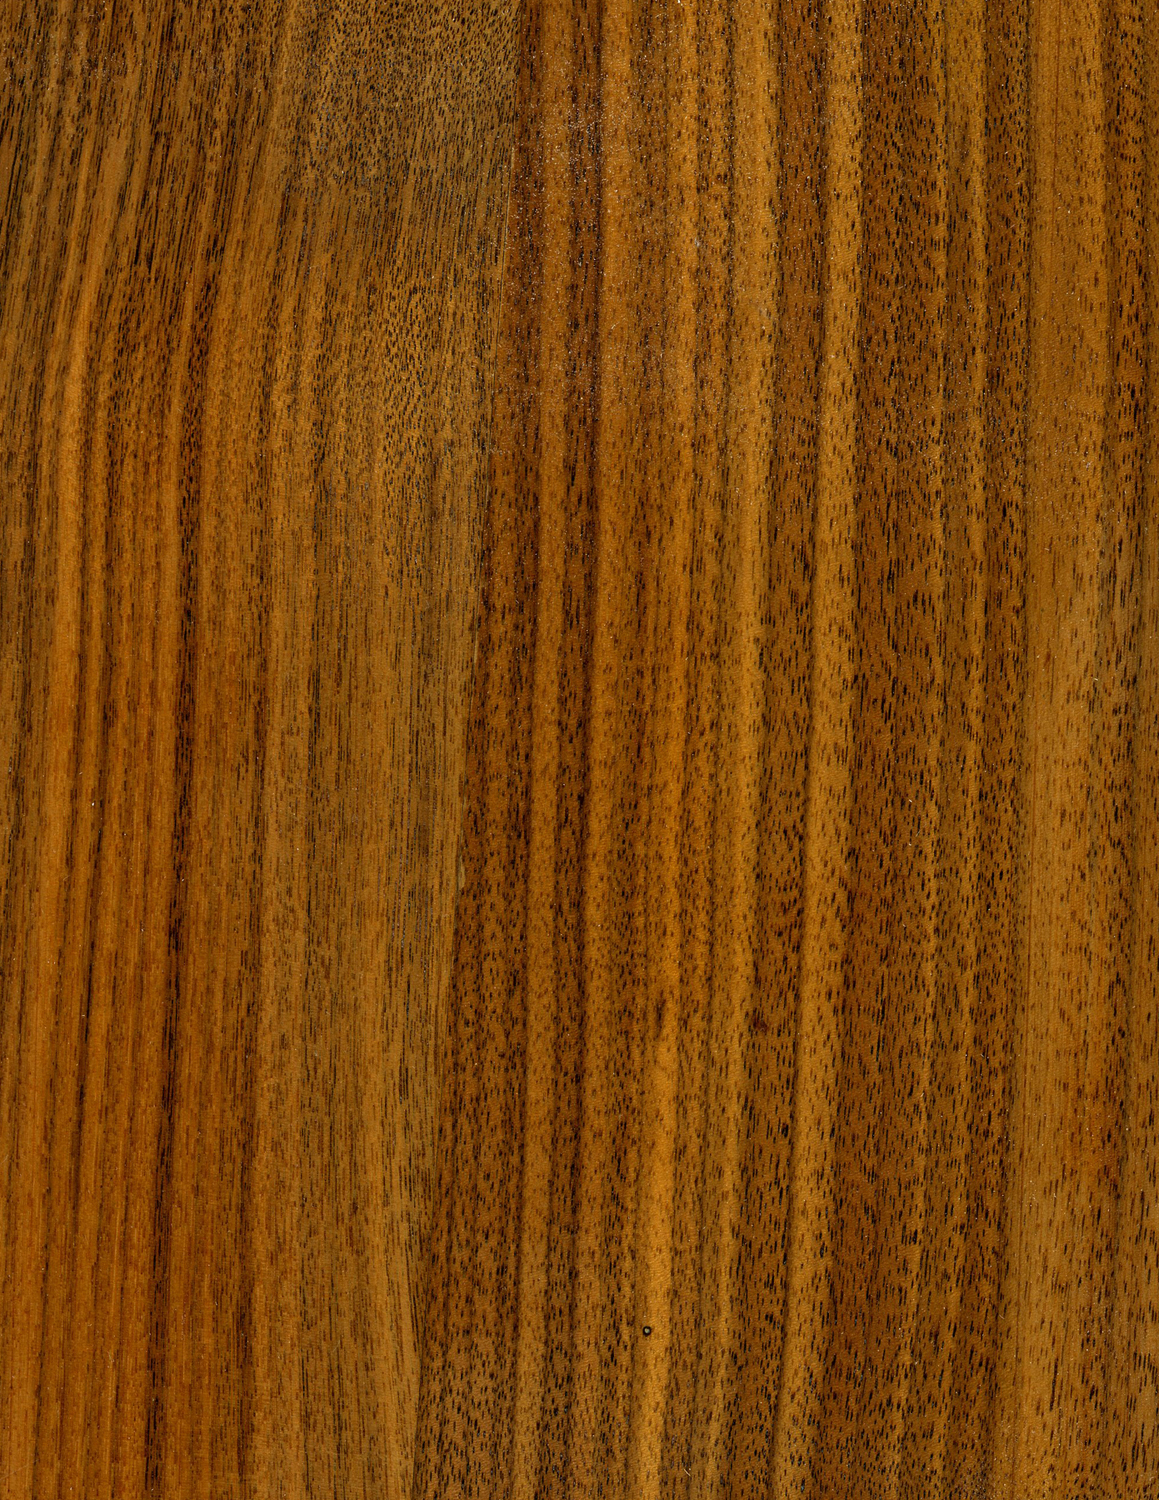 Walnut Wood Grain Texture